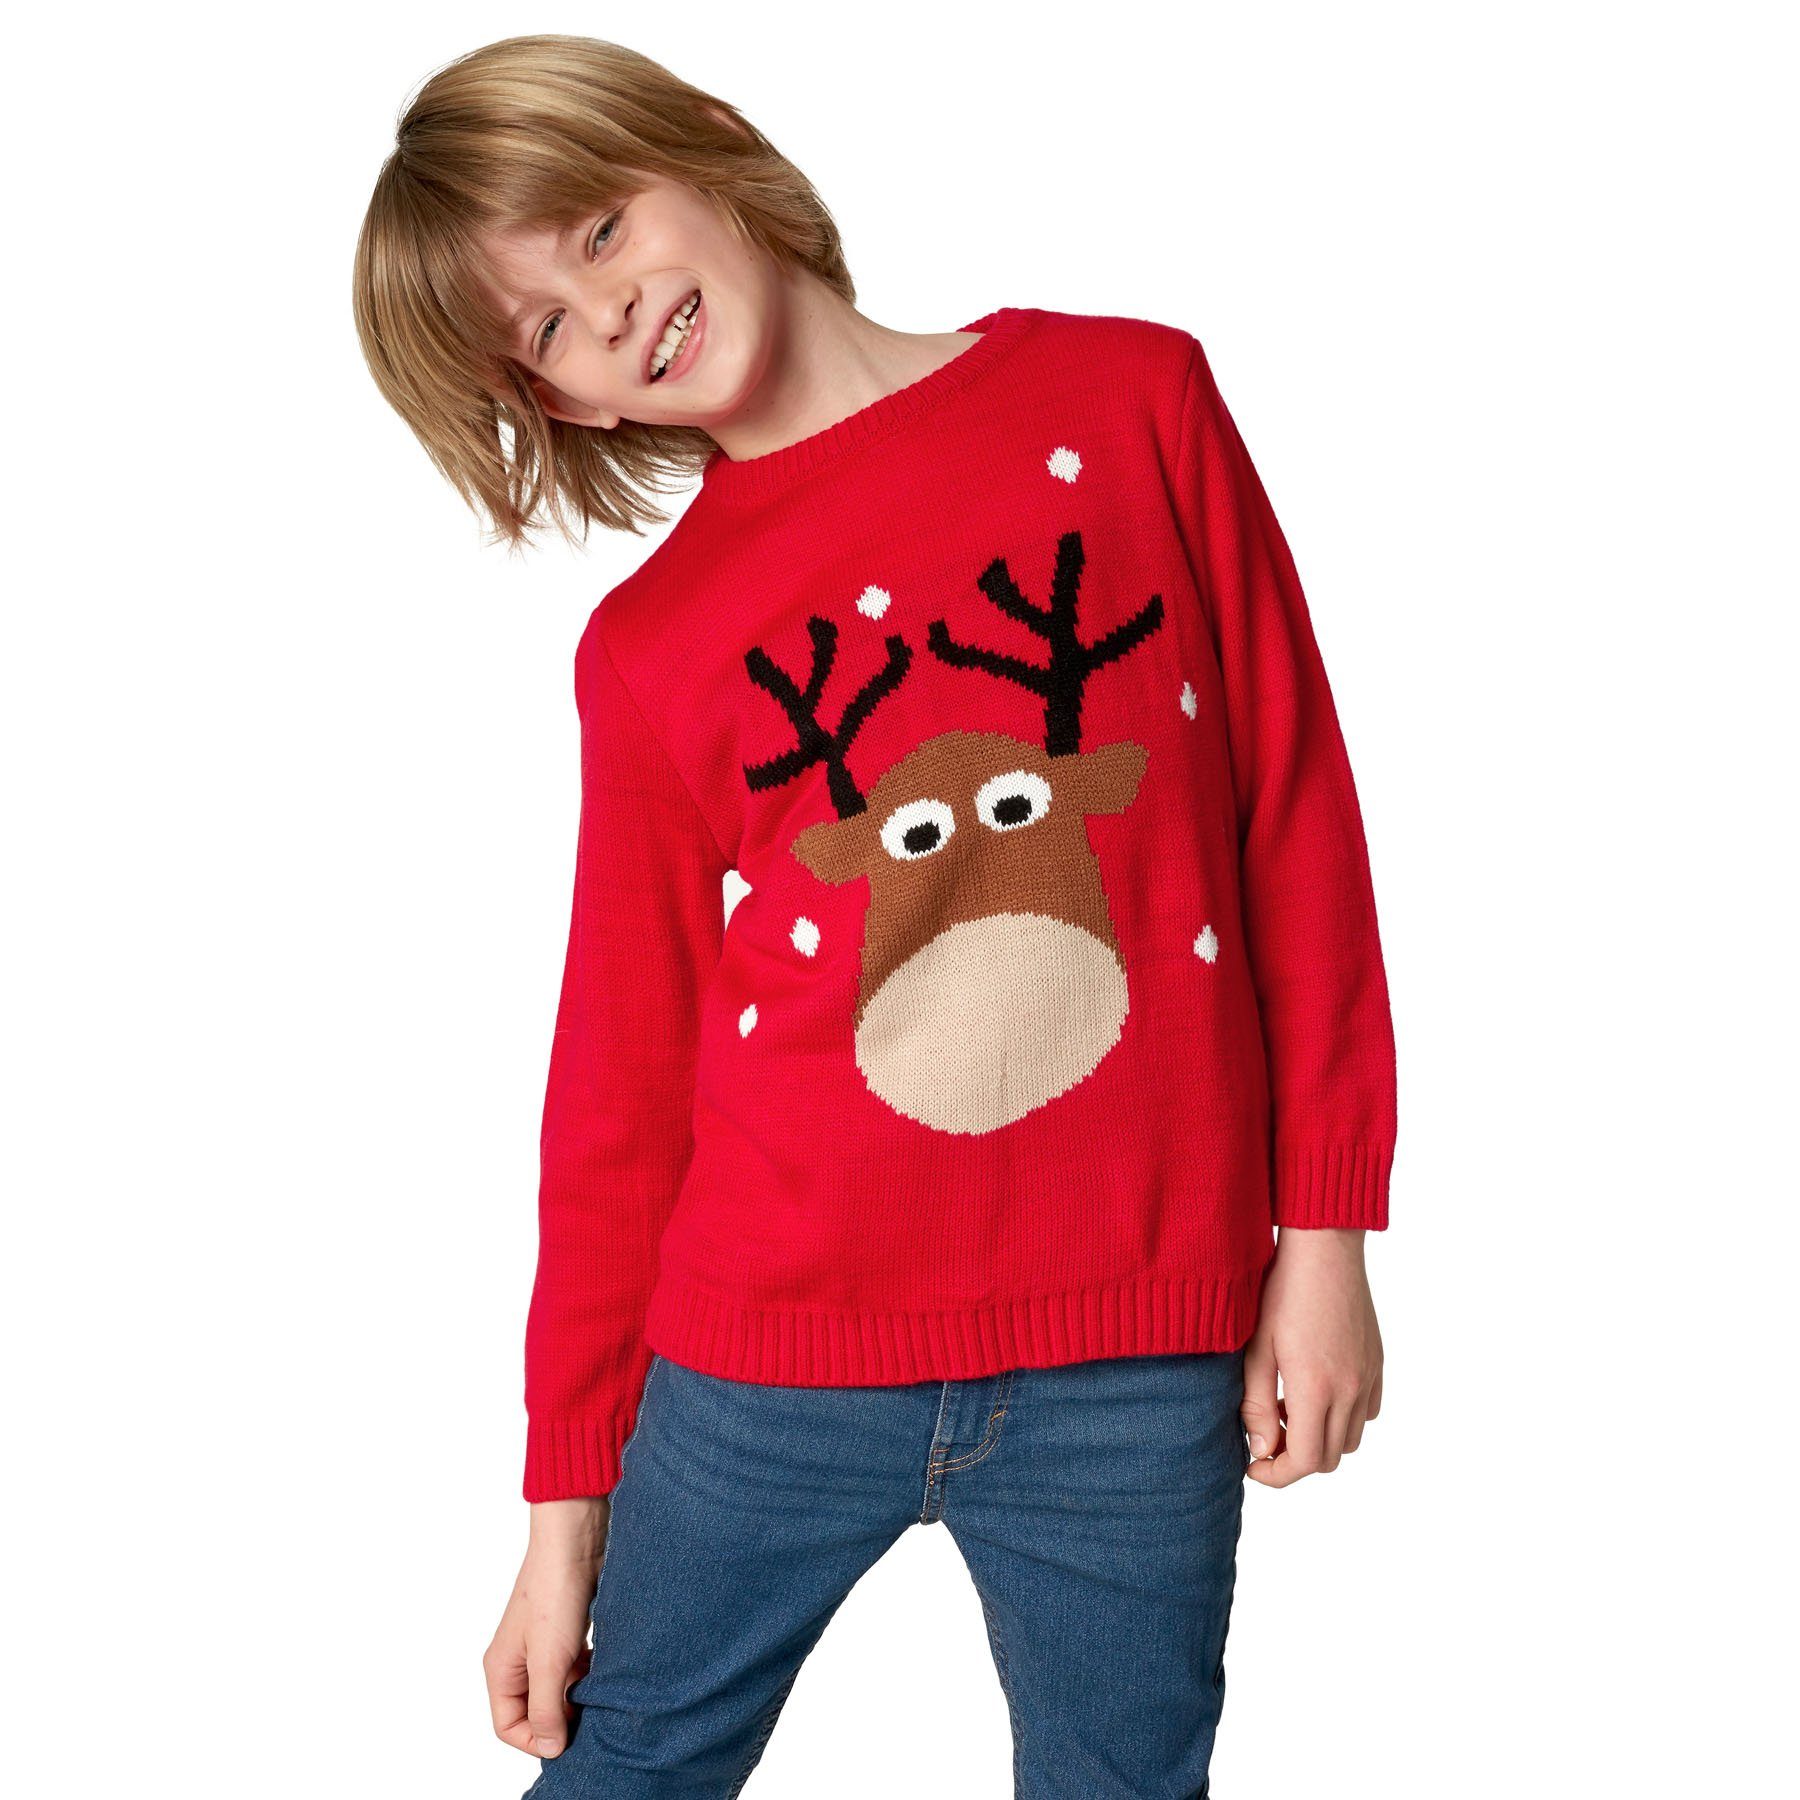 Weihnachtspullover für Korientalisch reizendes dressforfun Weihnachtspullover Rentier